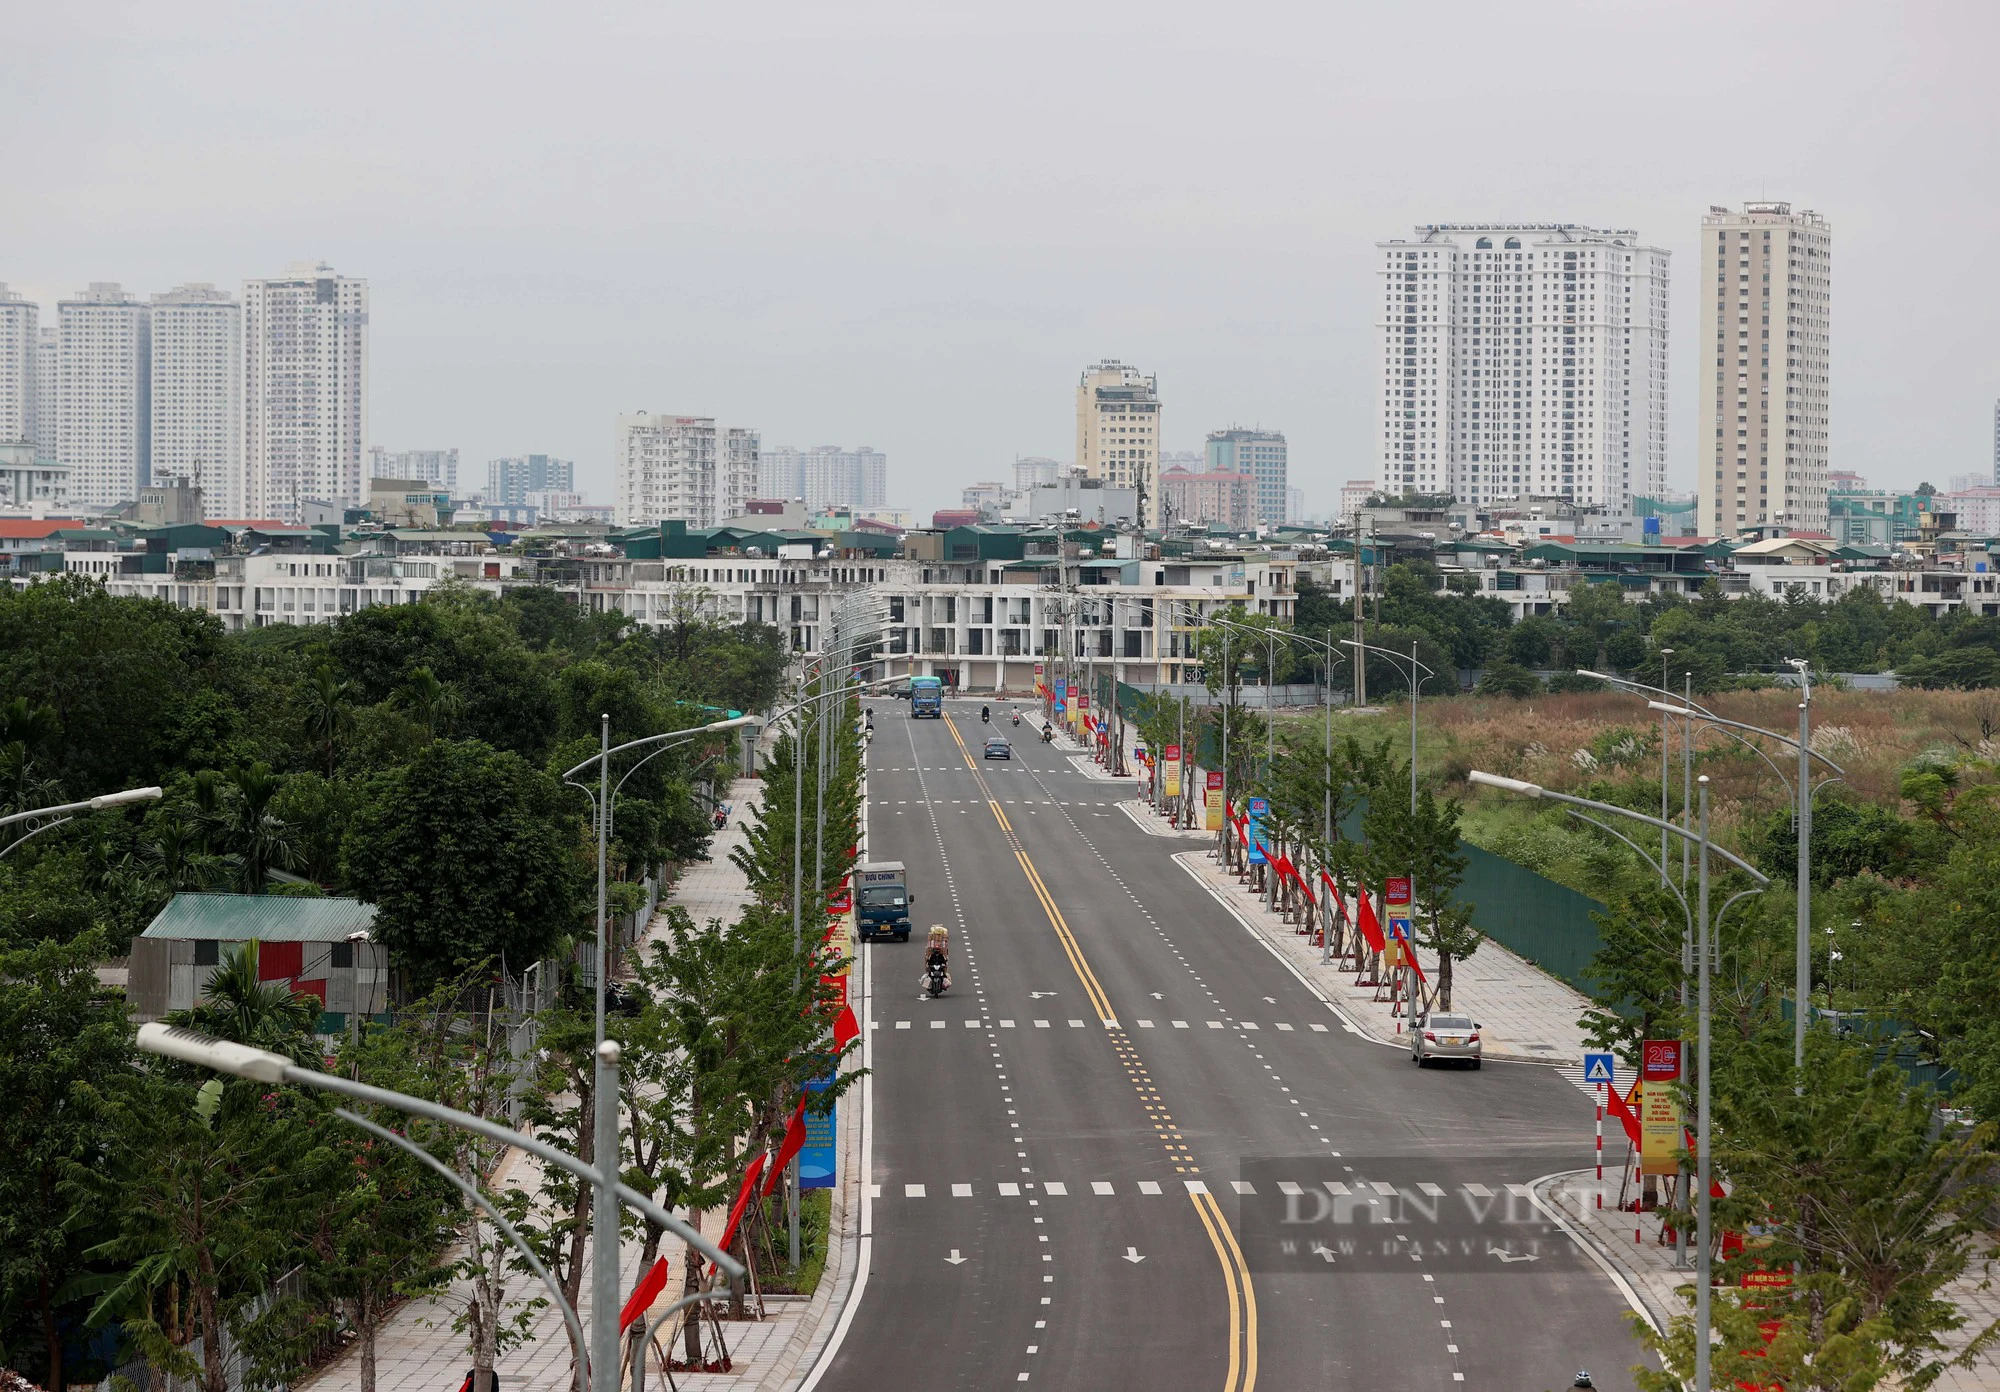 Con đường 500 tỷ đồng nối trung tâm Hà Nội tới cửa ngõ cao tốc Pháp Vân - Cầu Giẽ - Ảnh 1.